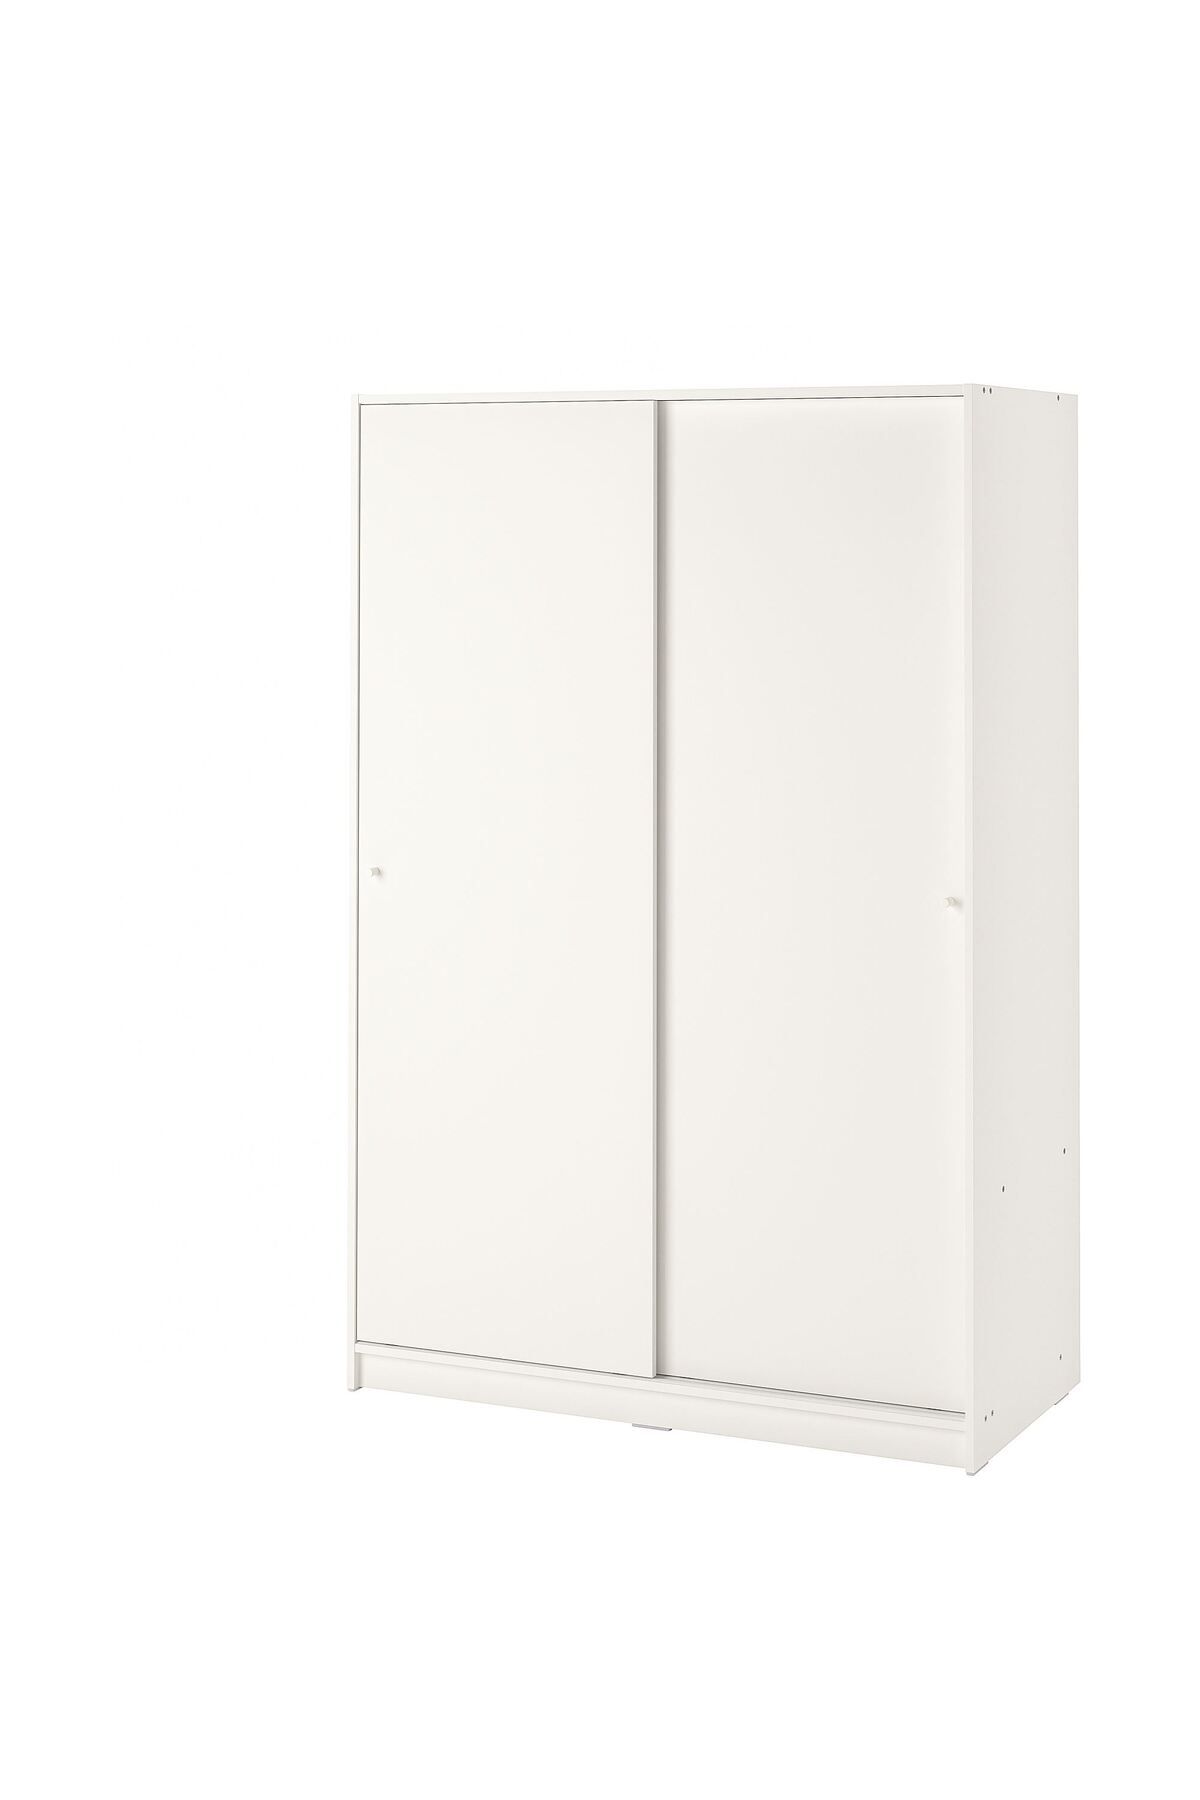 IKEA sürgü kapaklı gardırop, beyaz, 117x176 cm